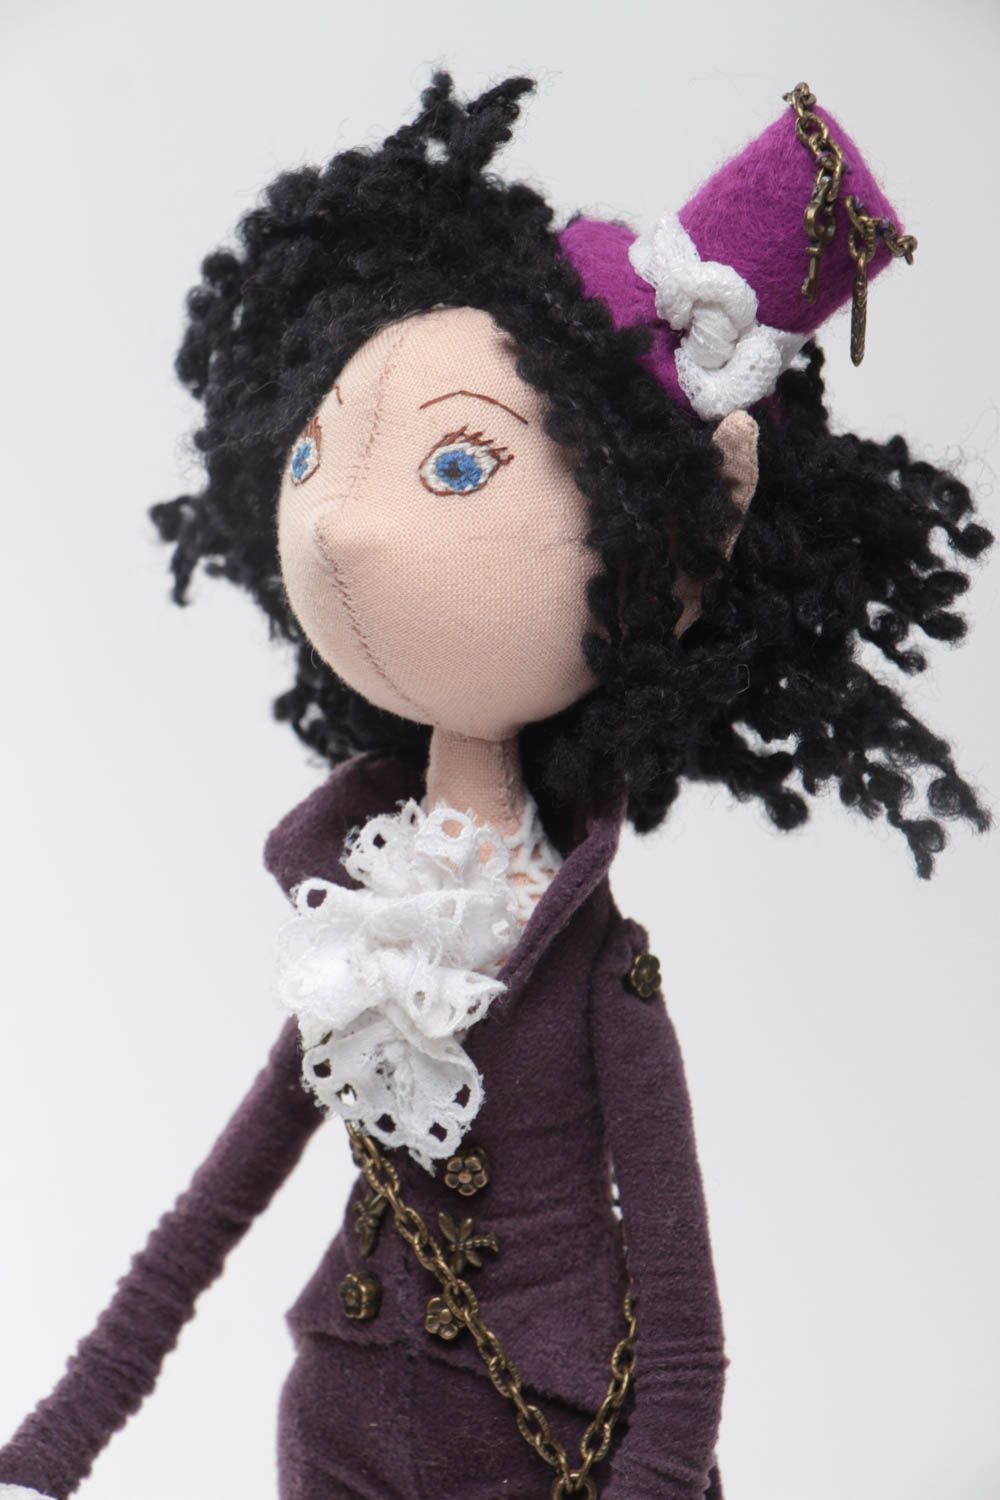 Textil Puppe für Interieur Elf auf Untersetzer aus Stoff handgemacht für Dekor foto 3